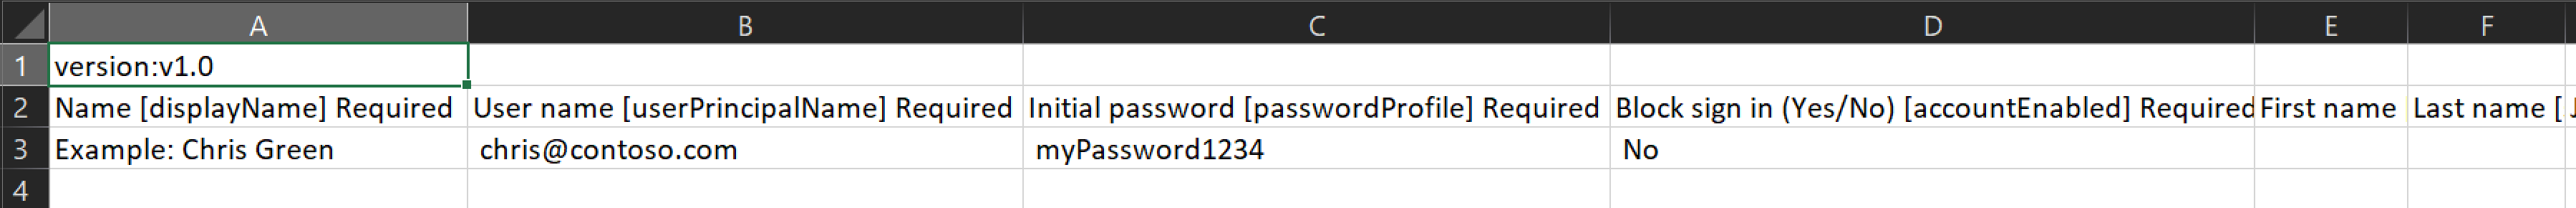 Skärmbild som visar ett exempel på CSV-filen som innehåller namnen och ID:t för de användare som ska skapas.